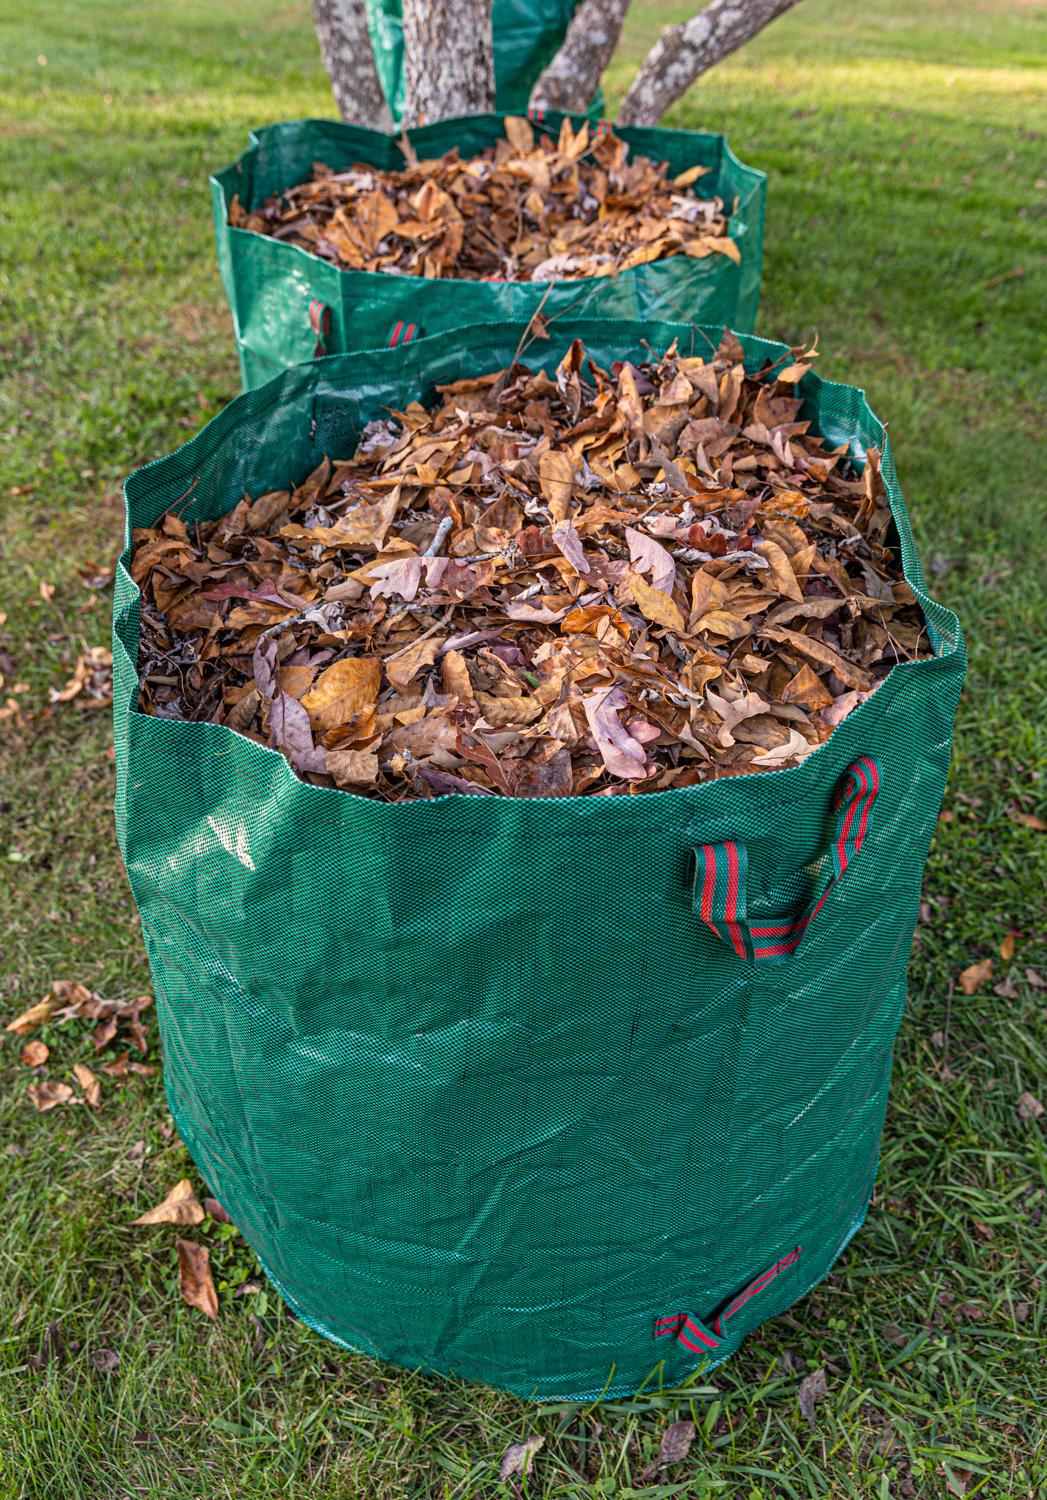 Gardzen Garden Bags, Leaves Waste Bags